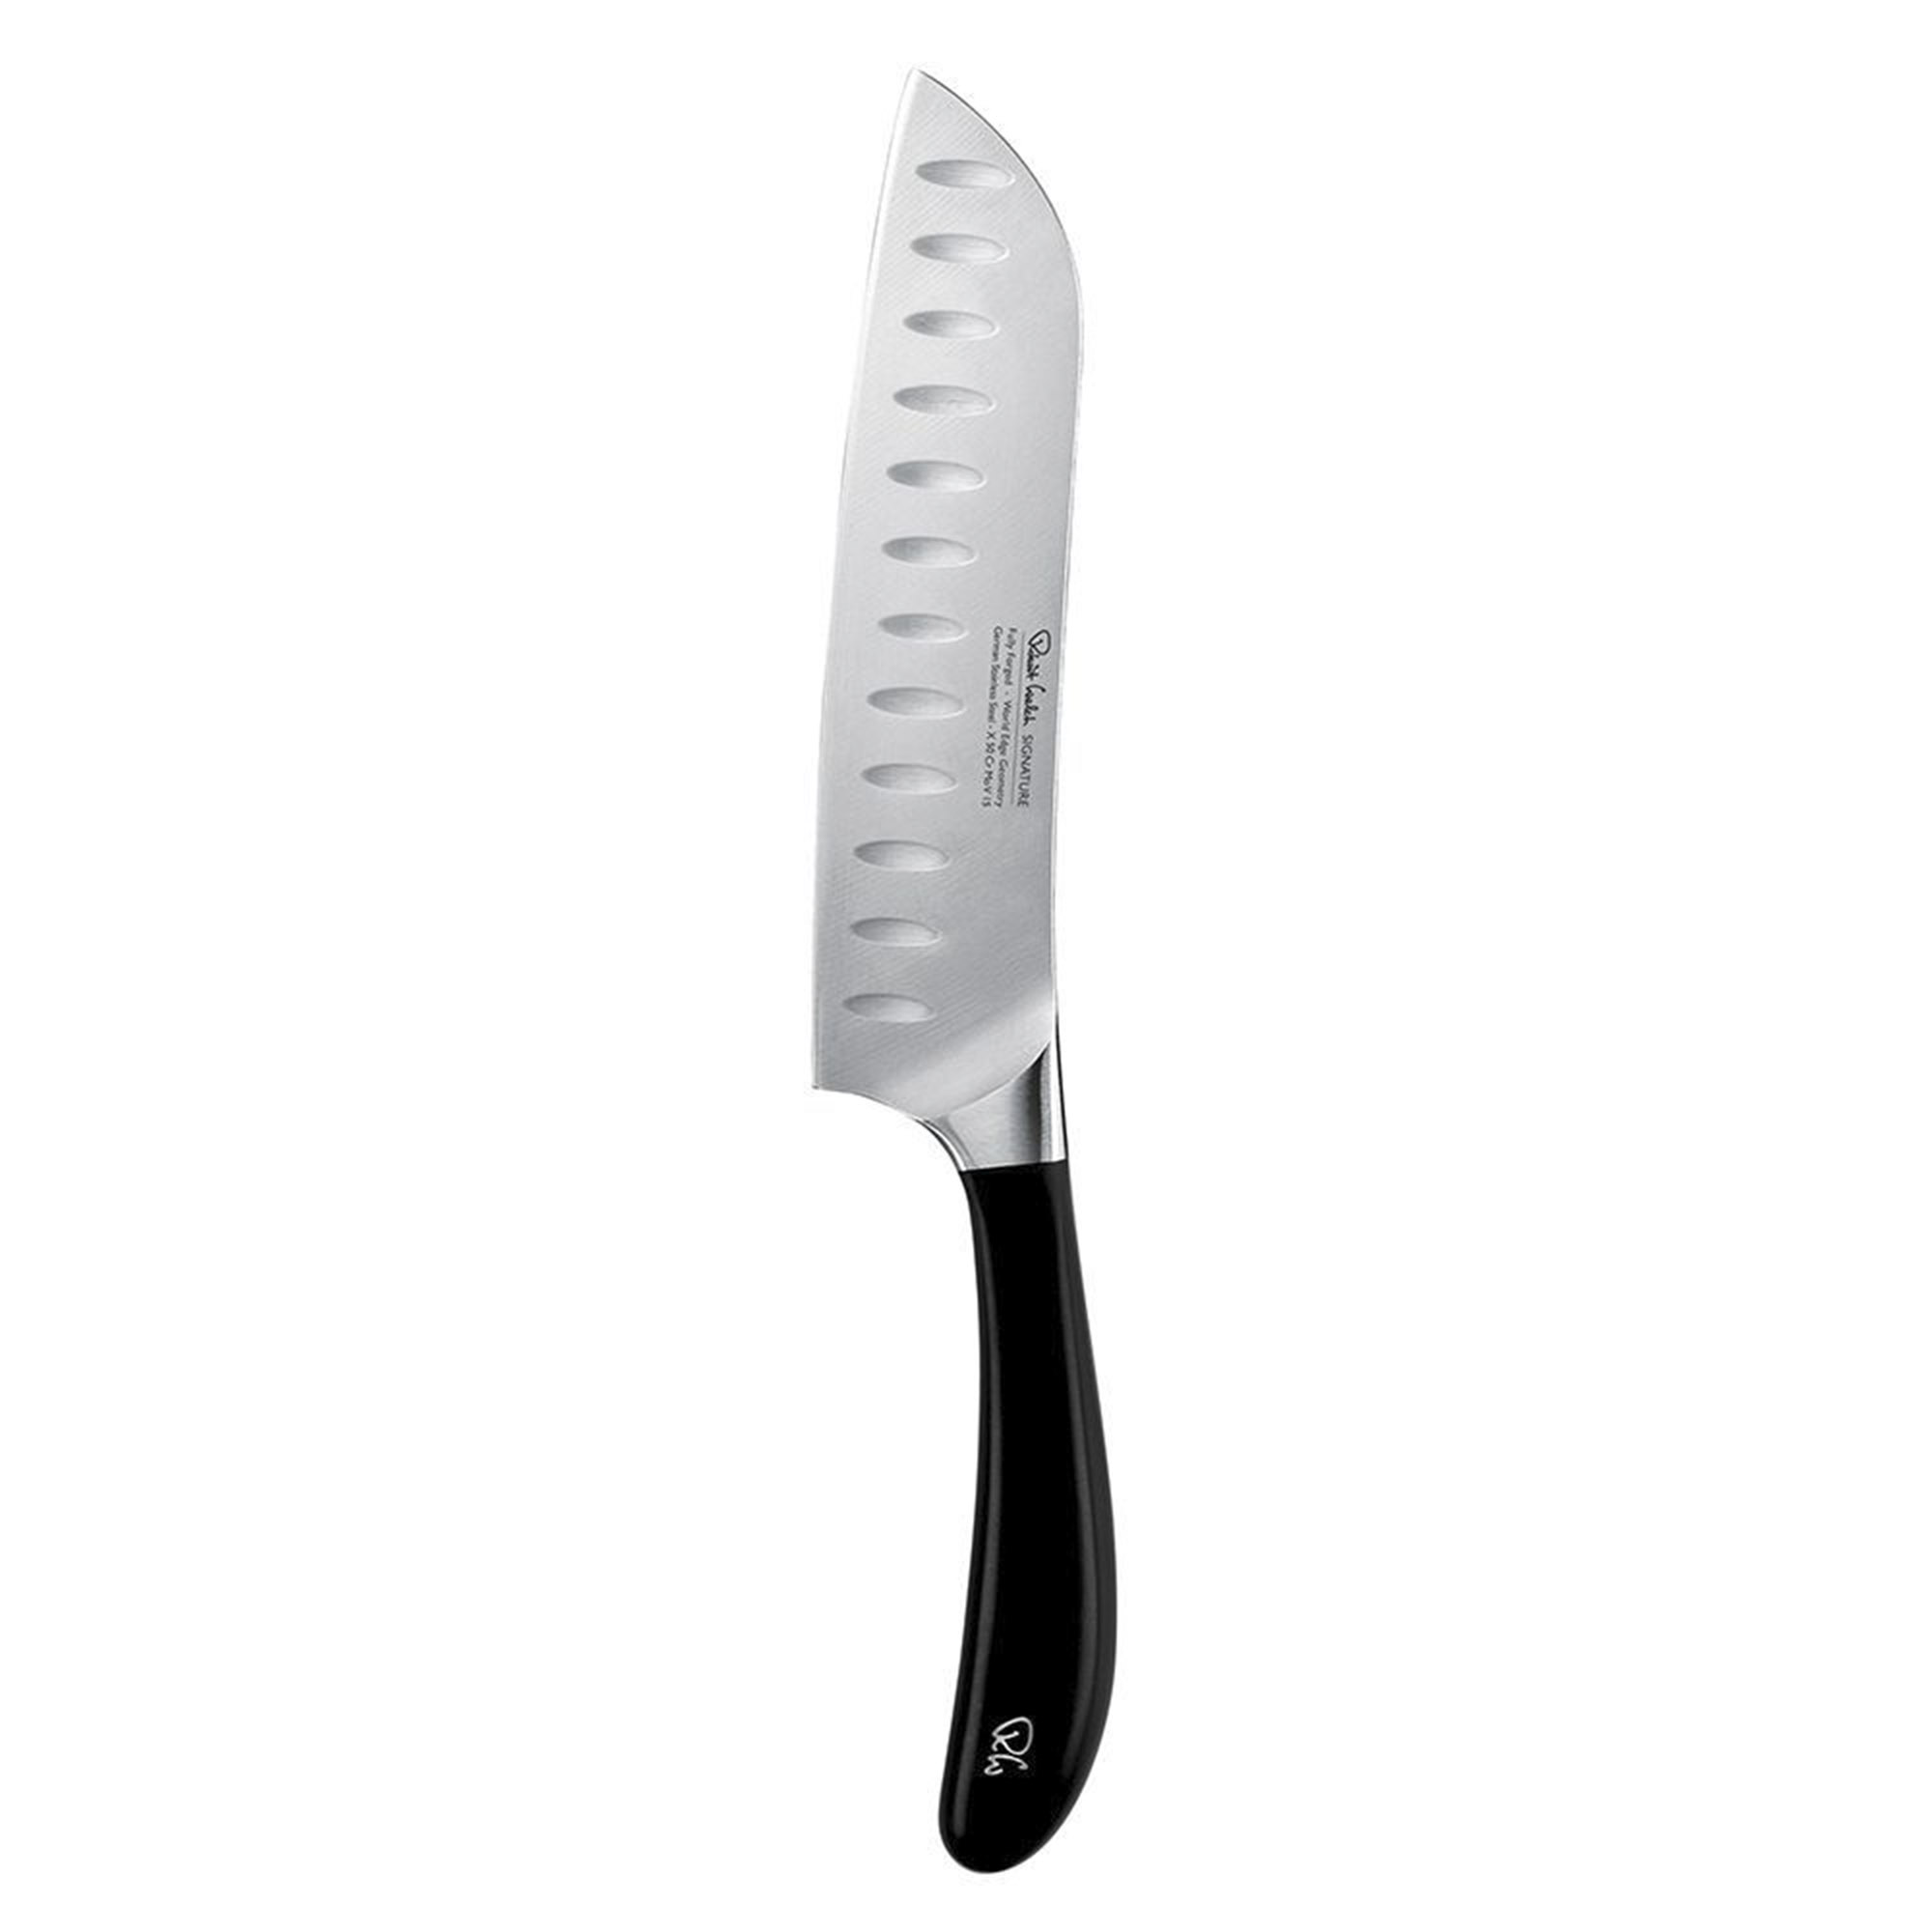 Нож кухонный японский шеф Robert Welch Signature 17 см нож кухонный robert welch signature 18см